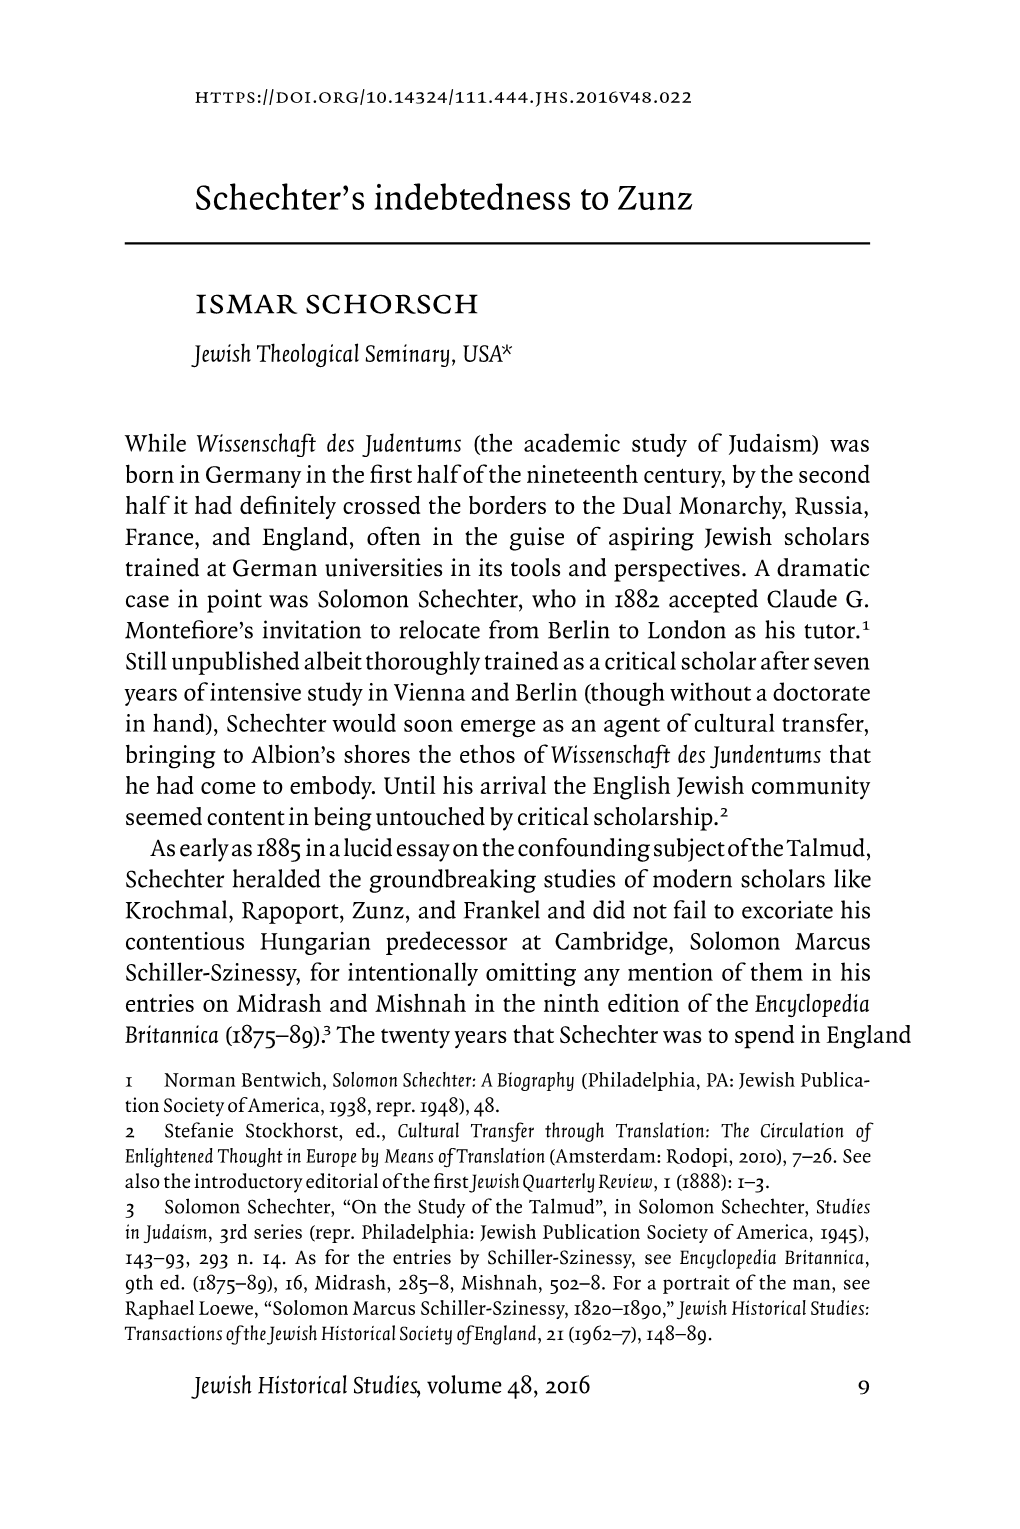 Schechter's Indebtedness to Zunz Ismar Schorsch